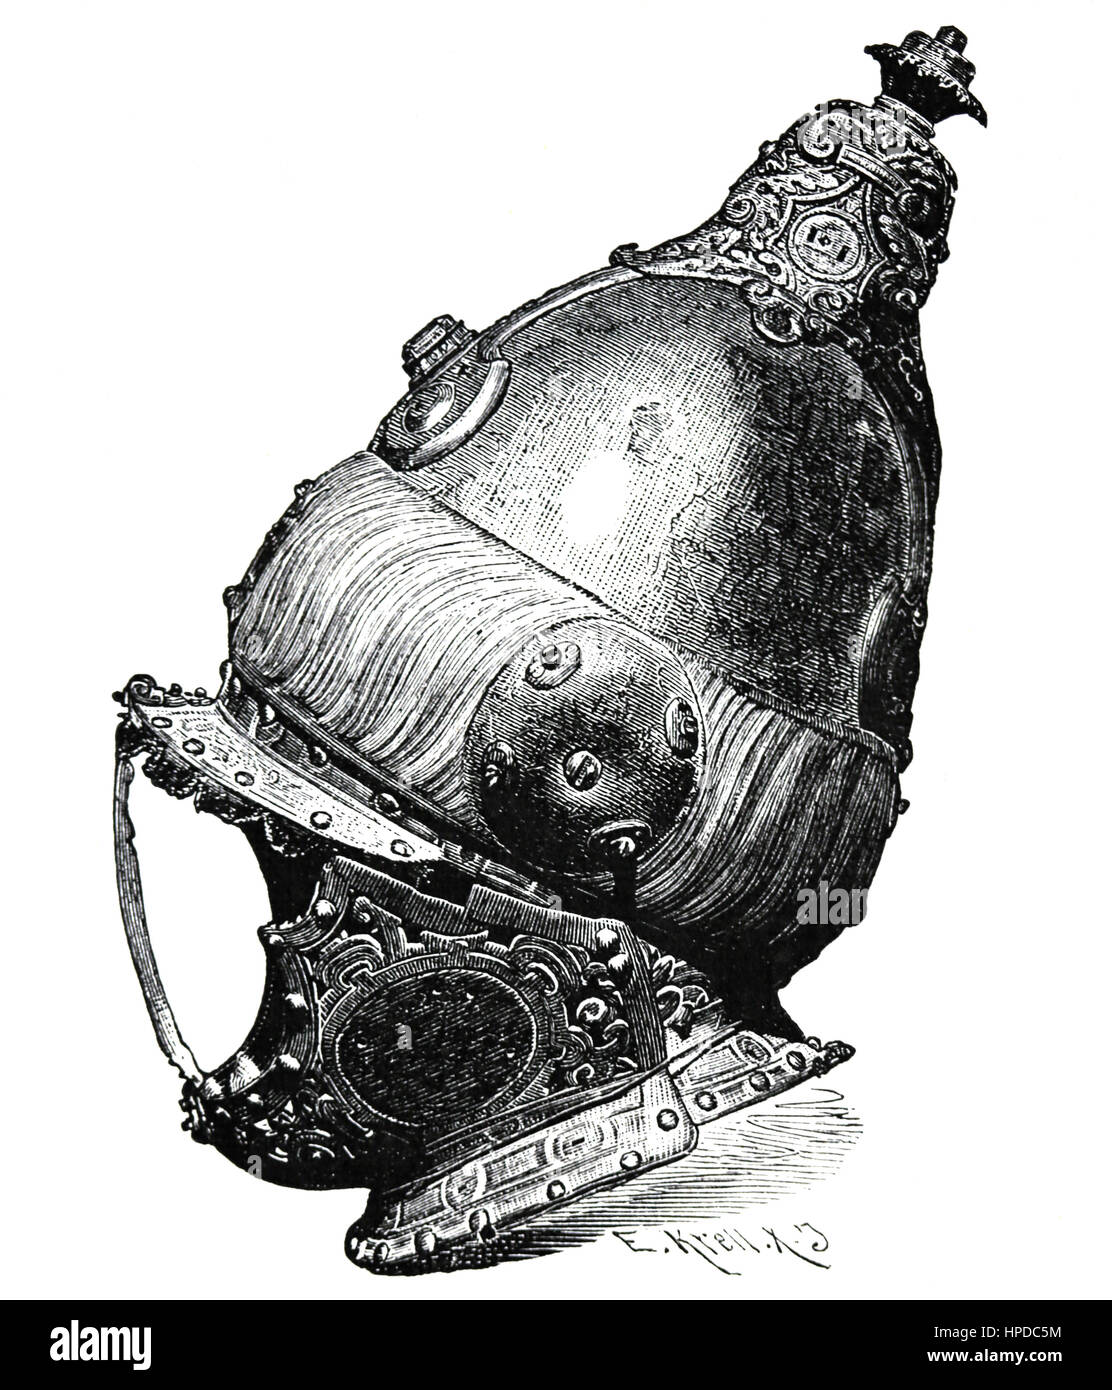 Armet, casque turc de la bataille de Lépante, 1571. La gravure. Banque D'Images